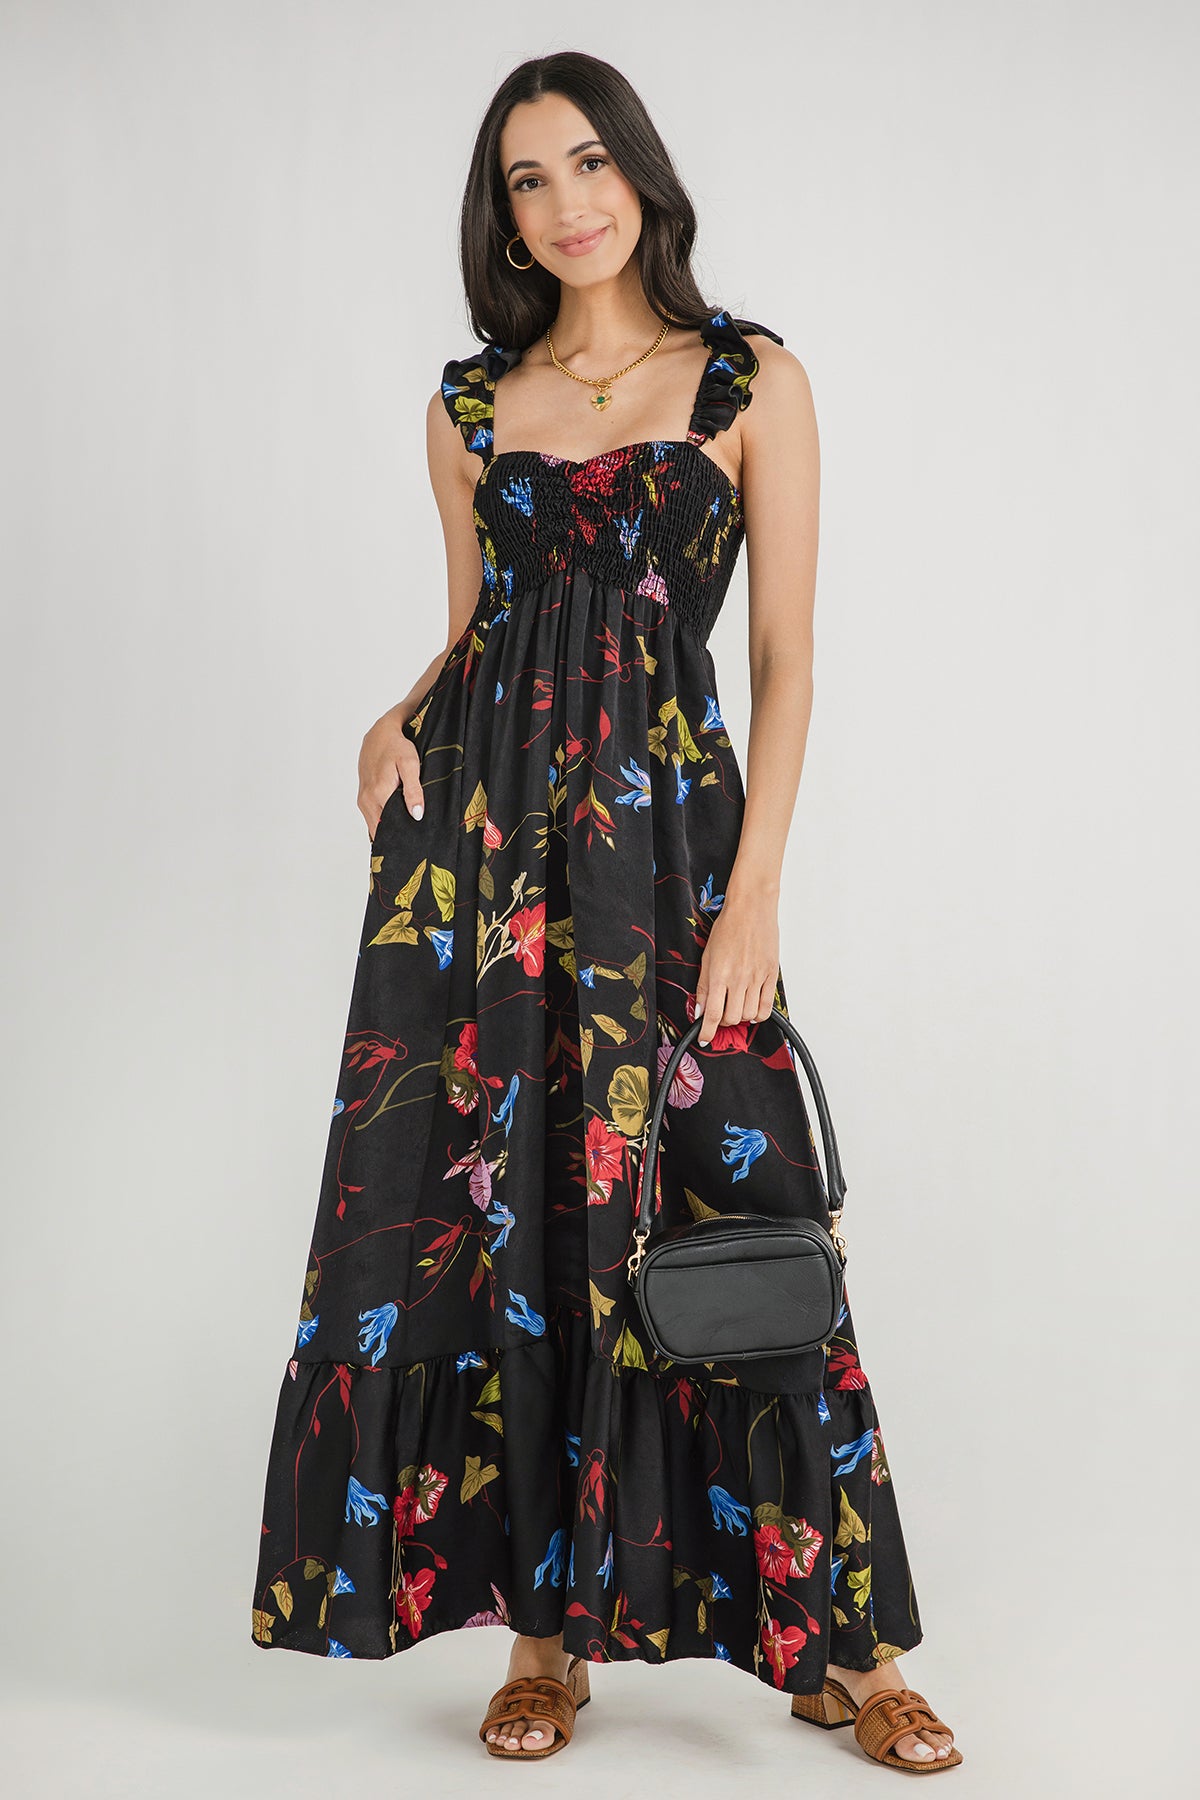 Bucketlist Smocked Bust Ruffle Sleeve Floral Maxi Dress